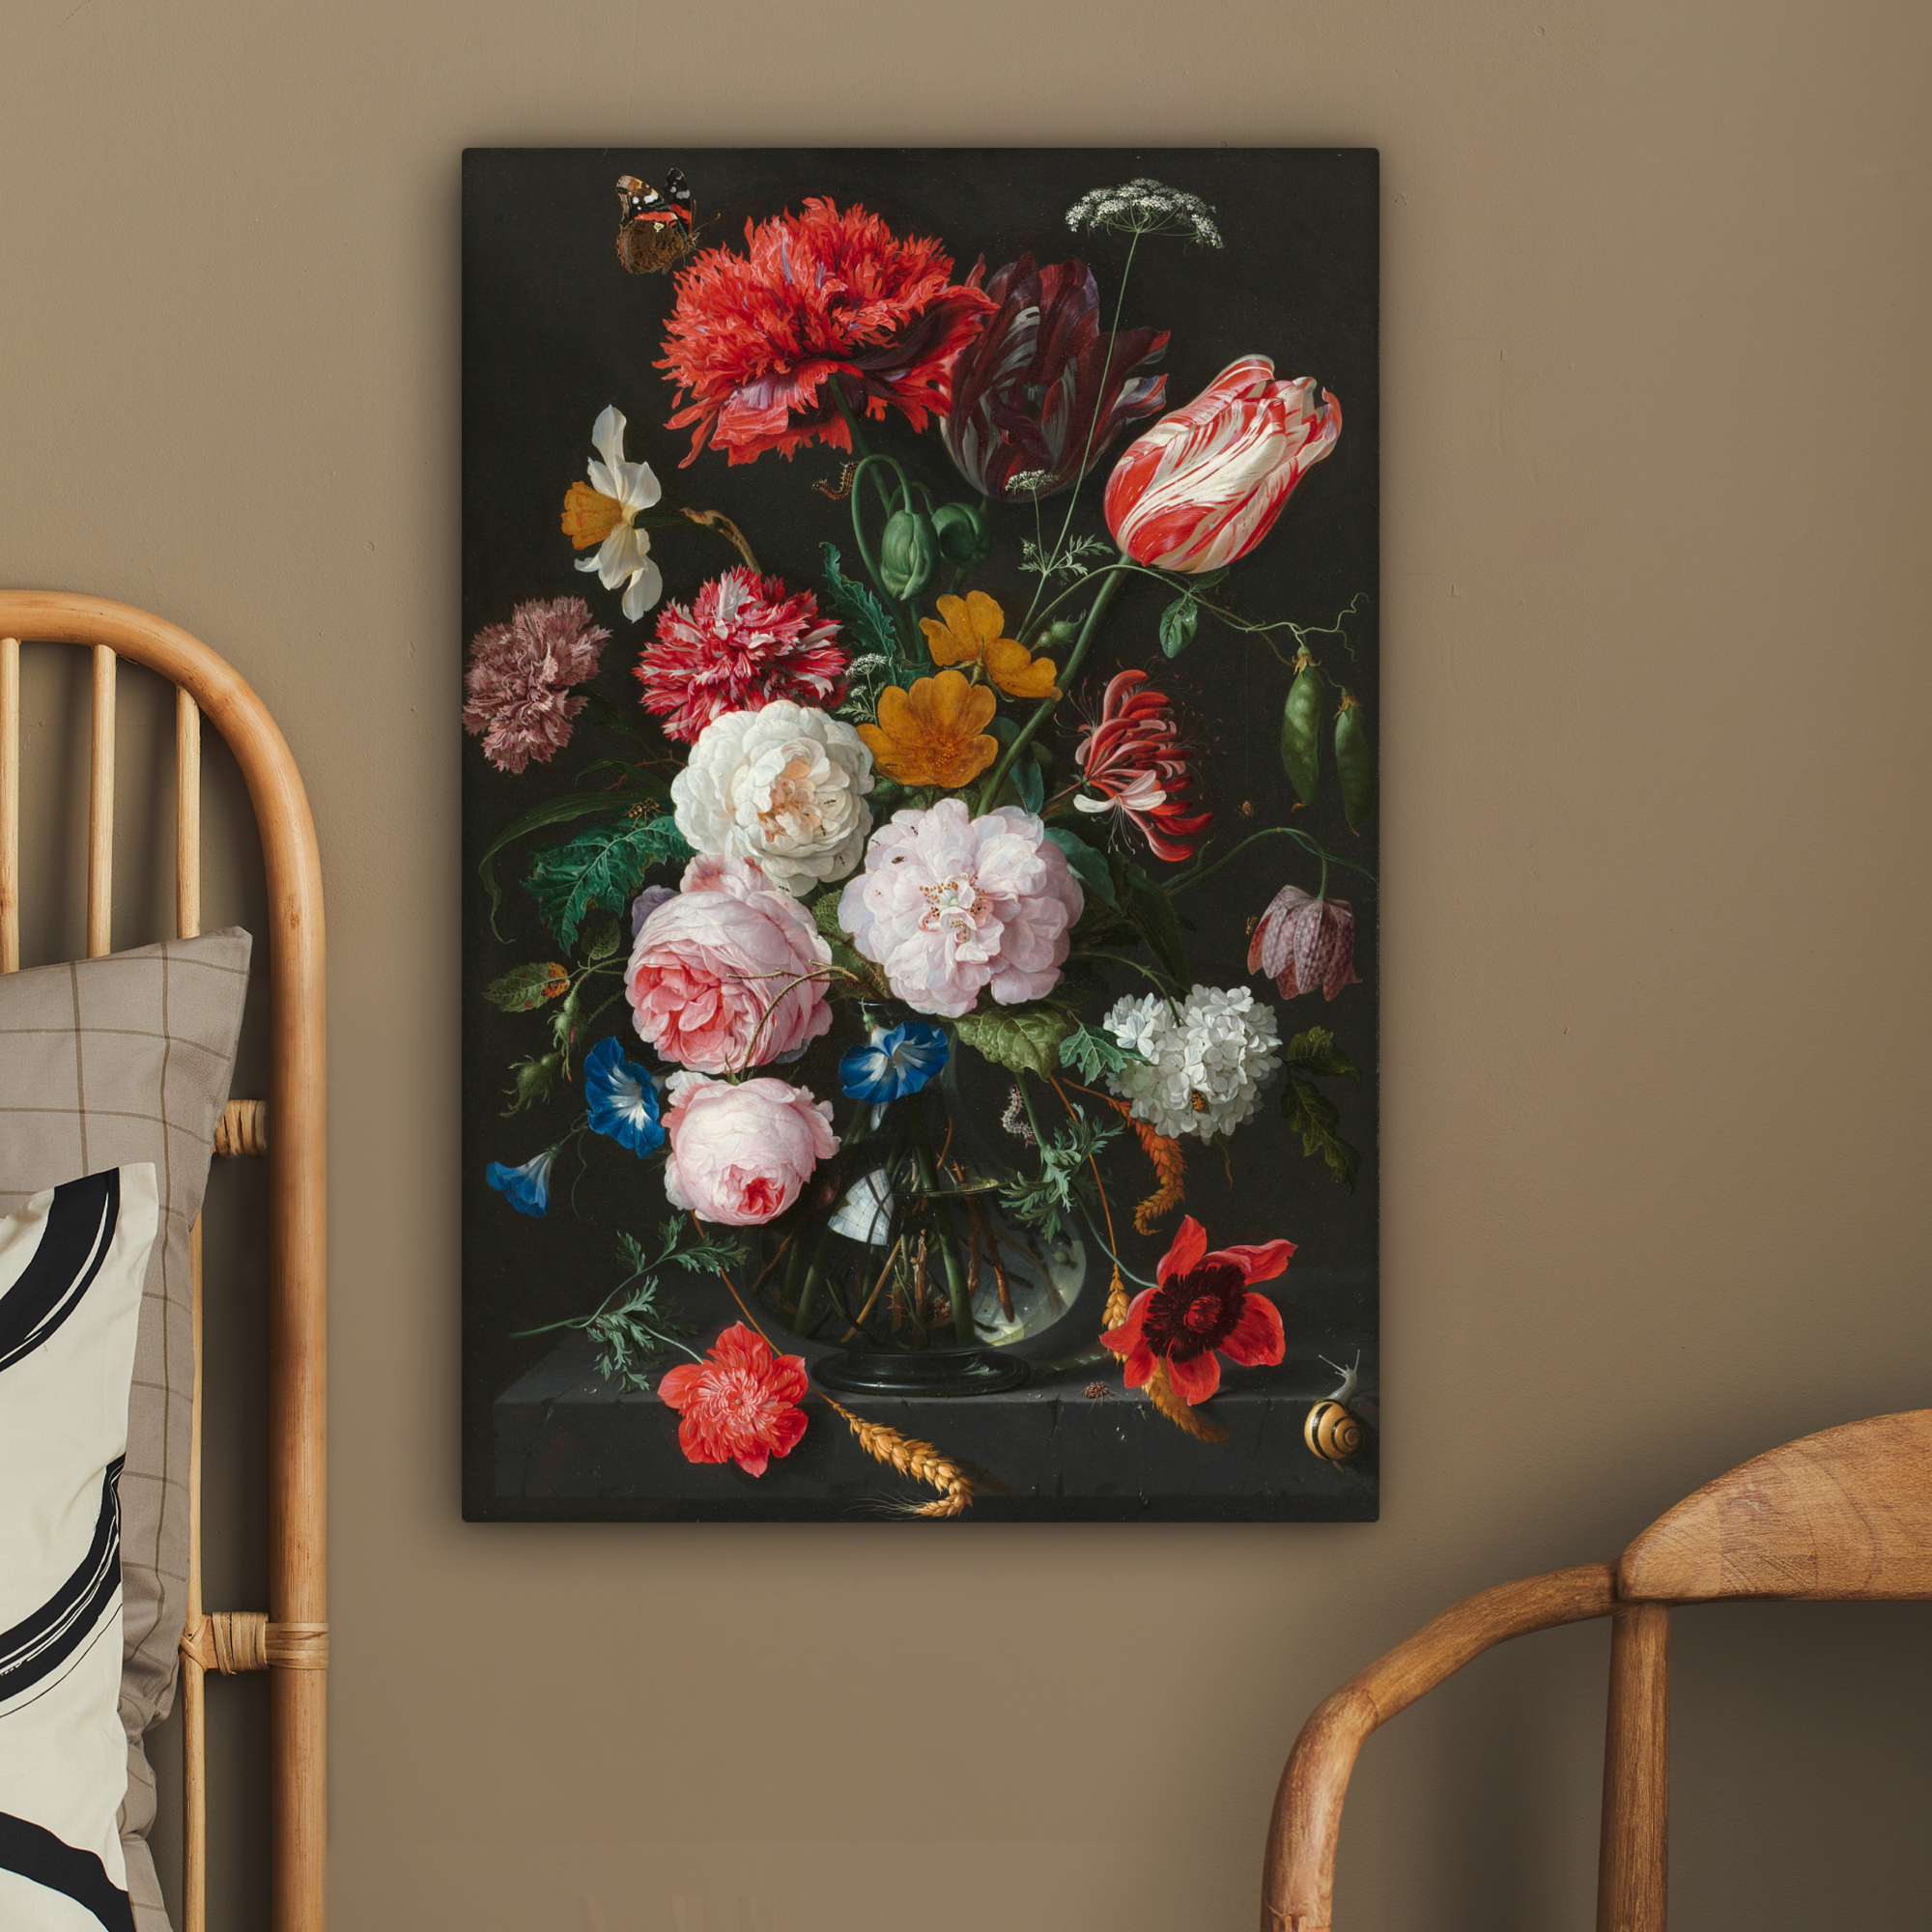 Leinwandbild - Stillleben mit Blumen in einer Glasvase - Gemälde von Jan Davidsz. de Heem-2